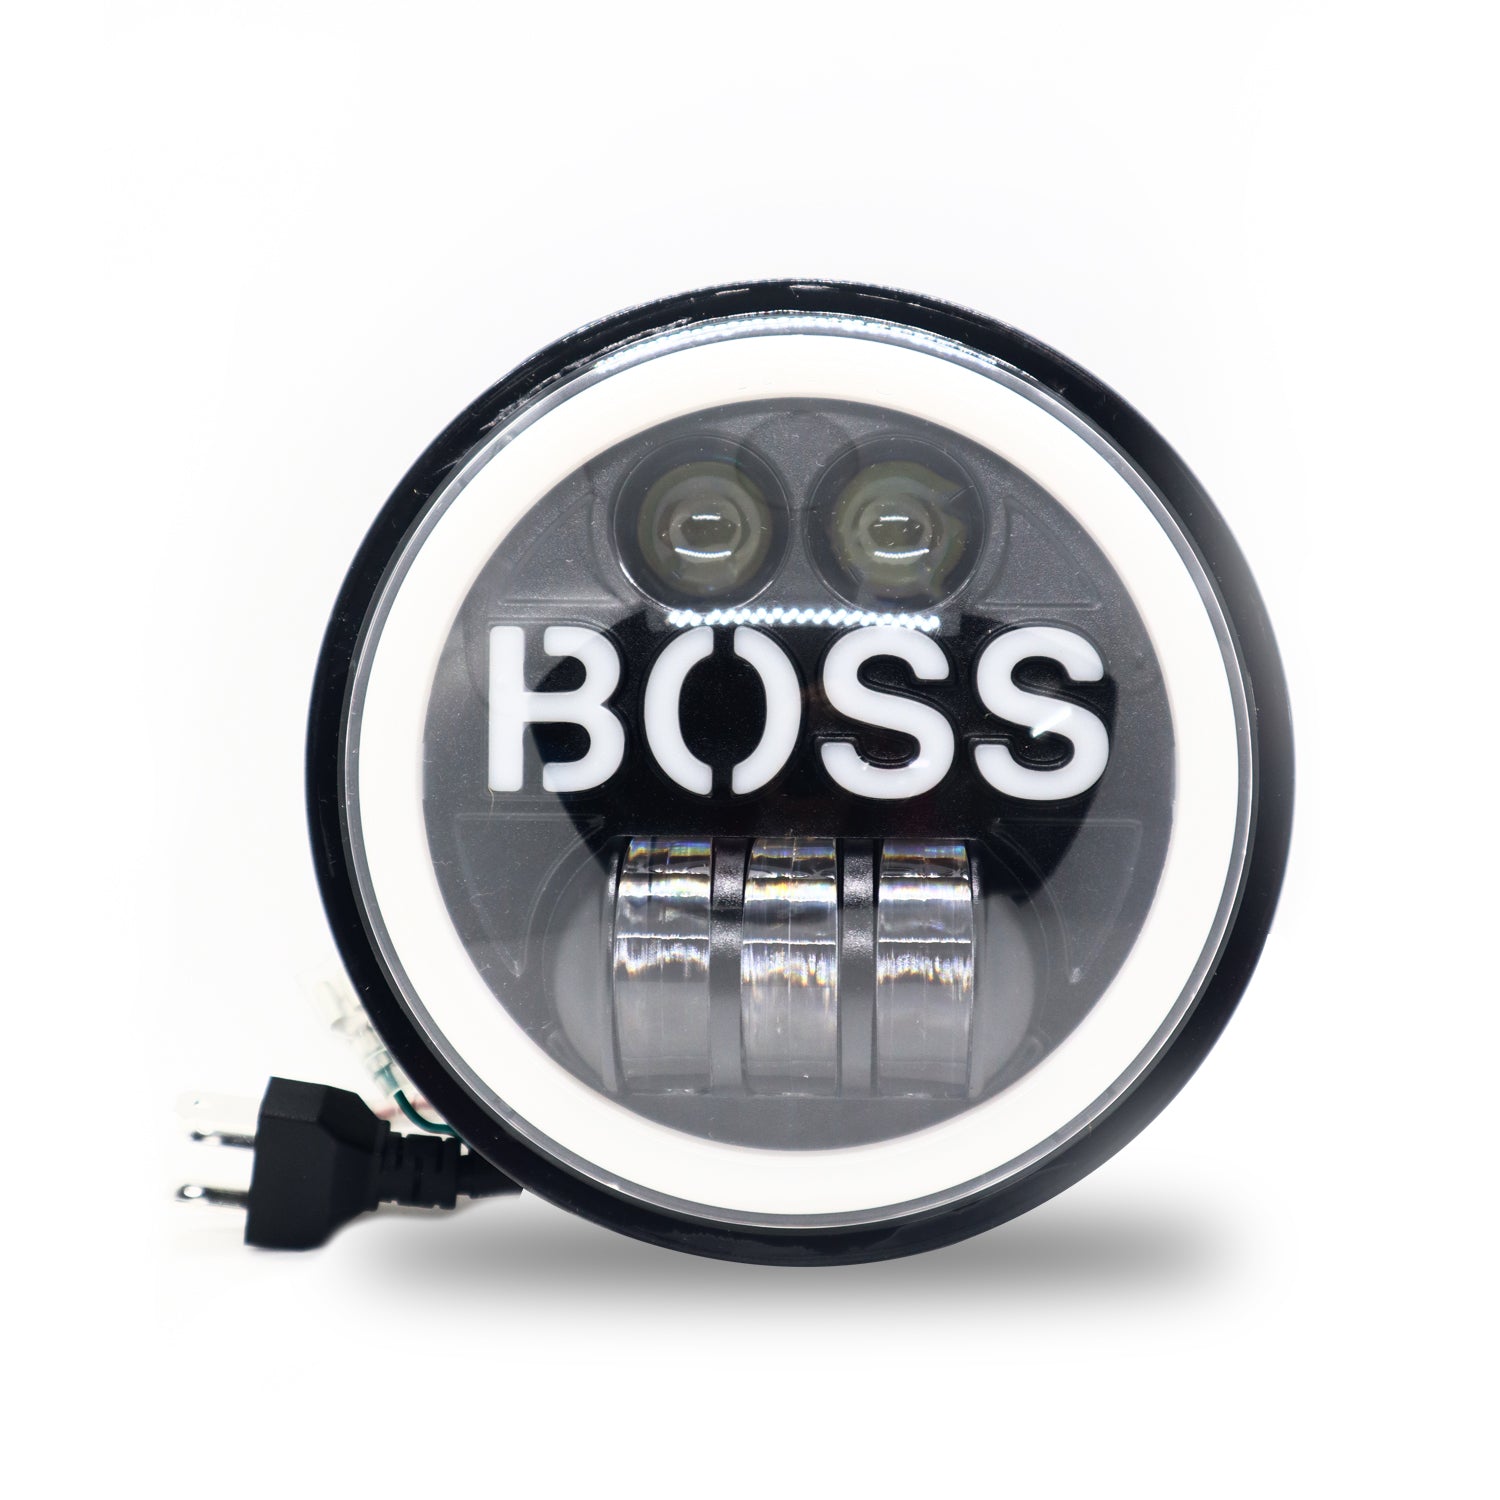 5.75 Inch Round Boss Headlight for Bajaj Avenger & Harley-Davidson(12V-80V, 75W)